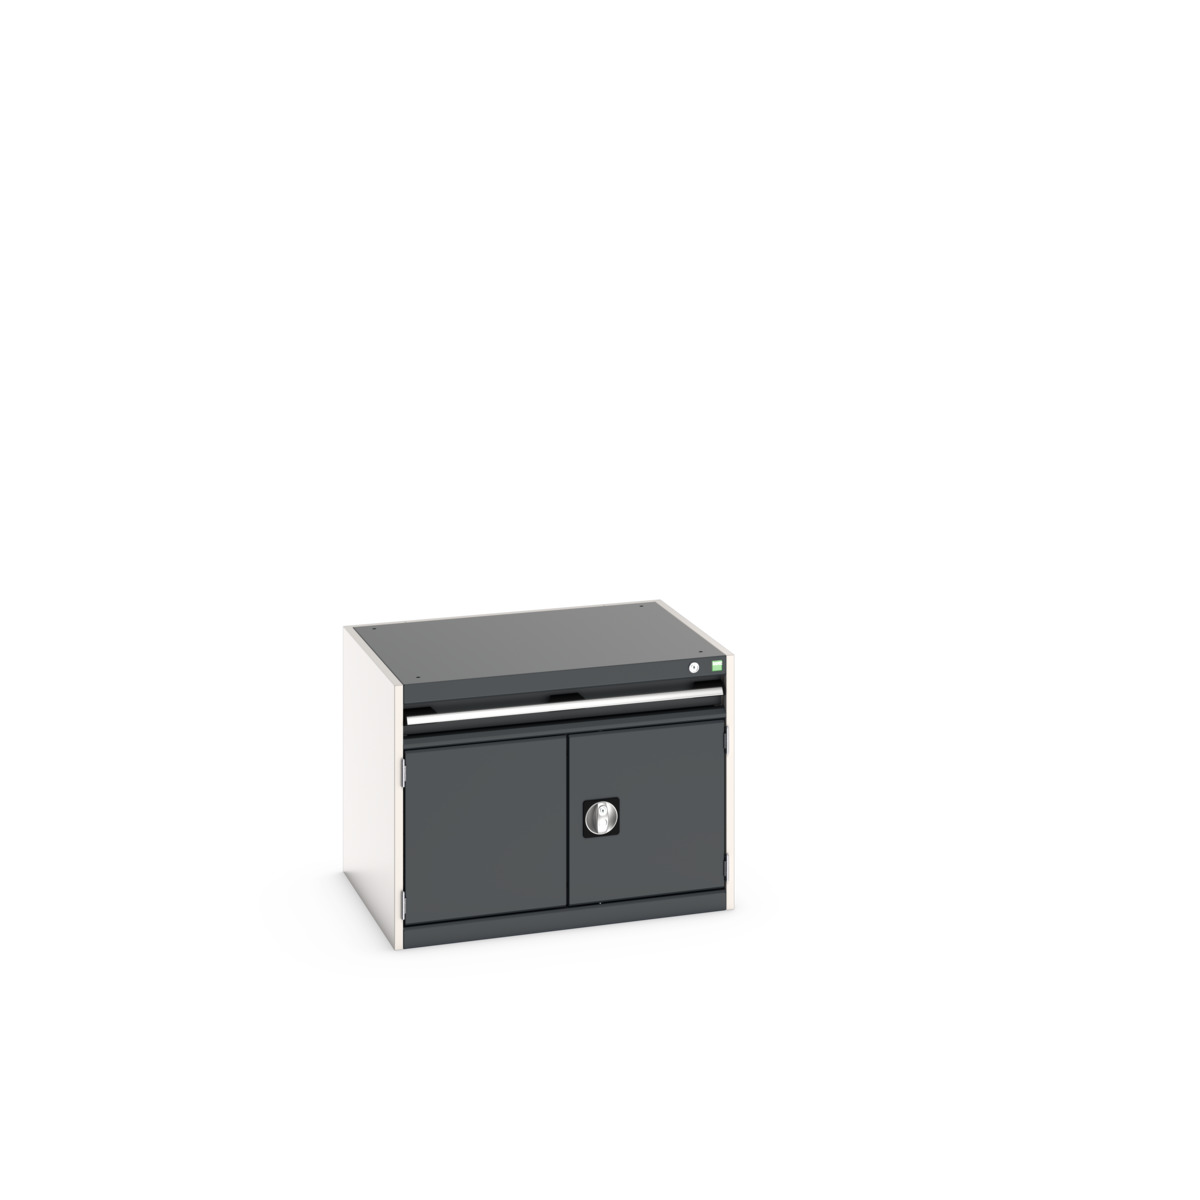 40020001. - cubio drawer-door cabinet